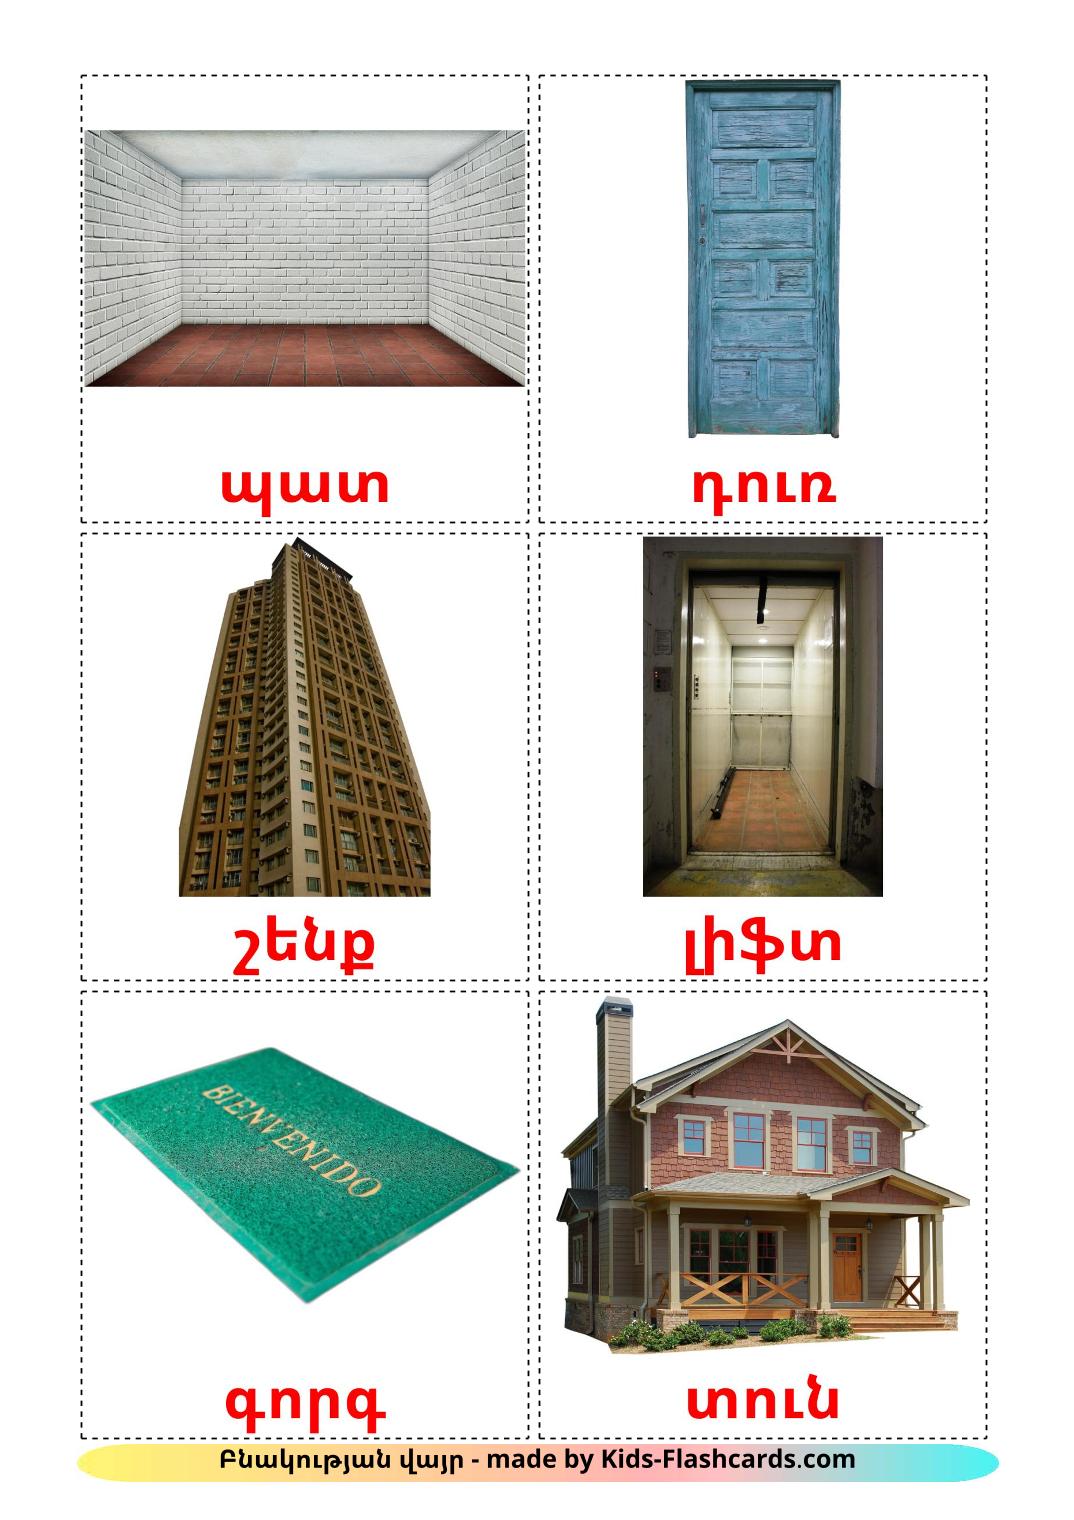 Casa - 25 Flashcards armênioes gratuitos para impressão